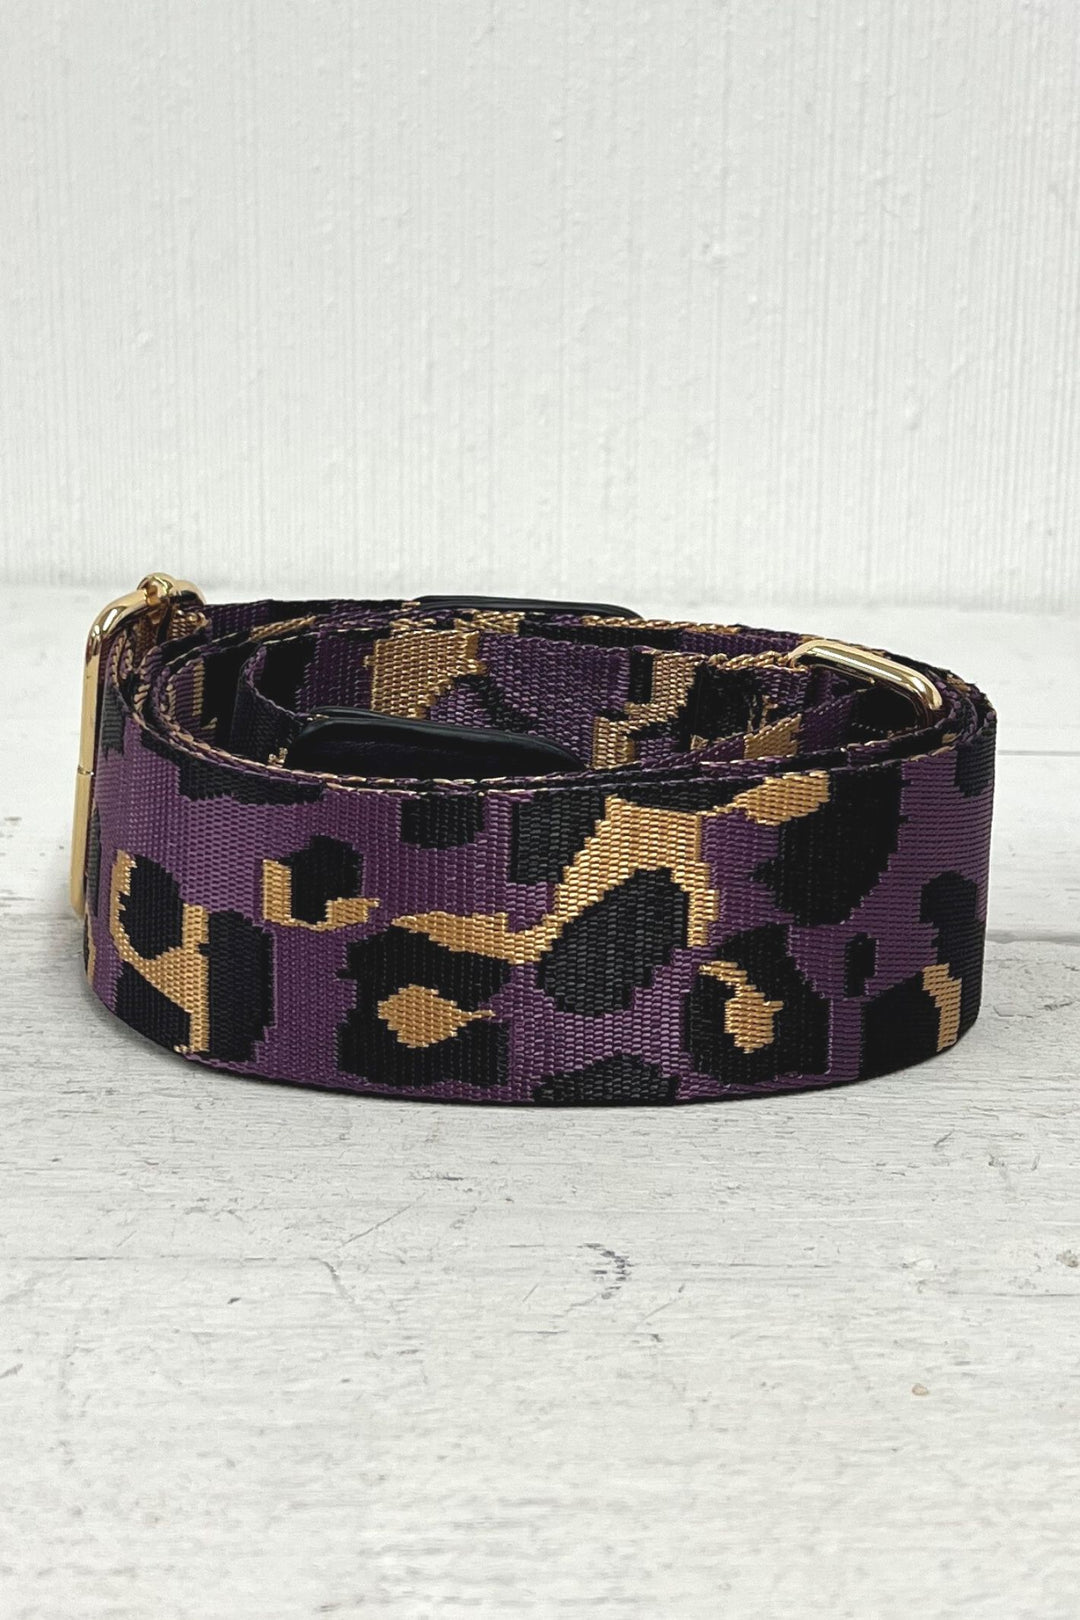 Leopard Print Interchangeable Bag Strap Purple Black Gold - Sugarplum Boutique